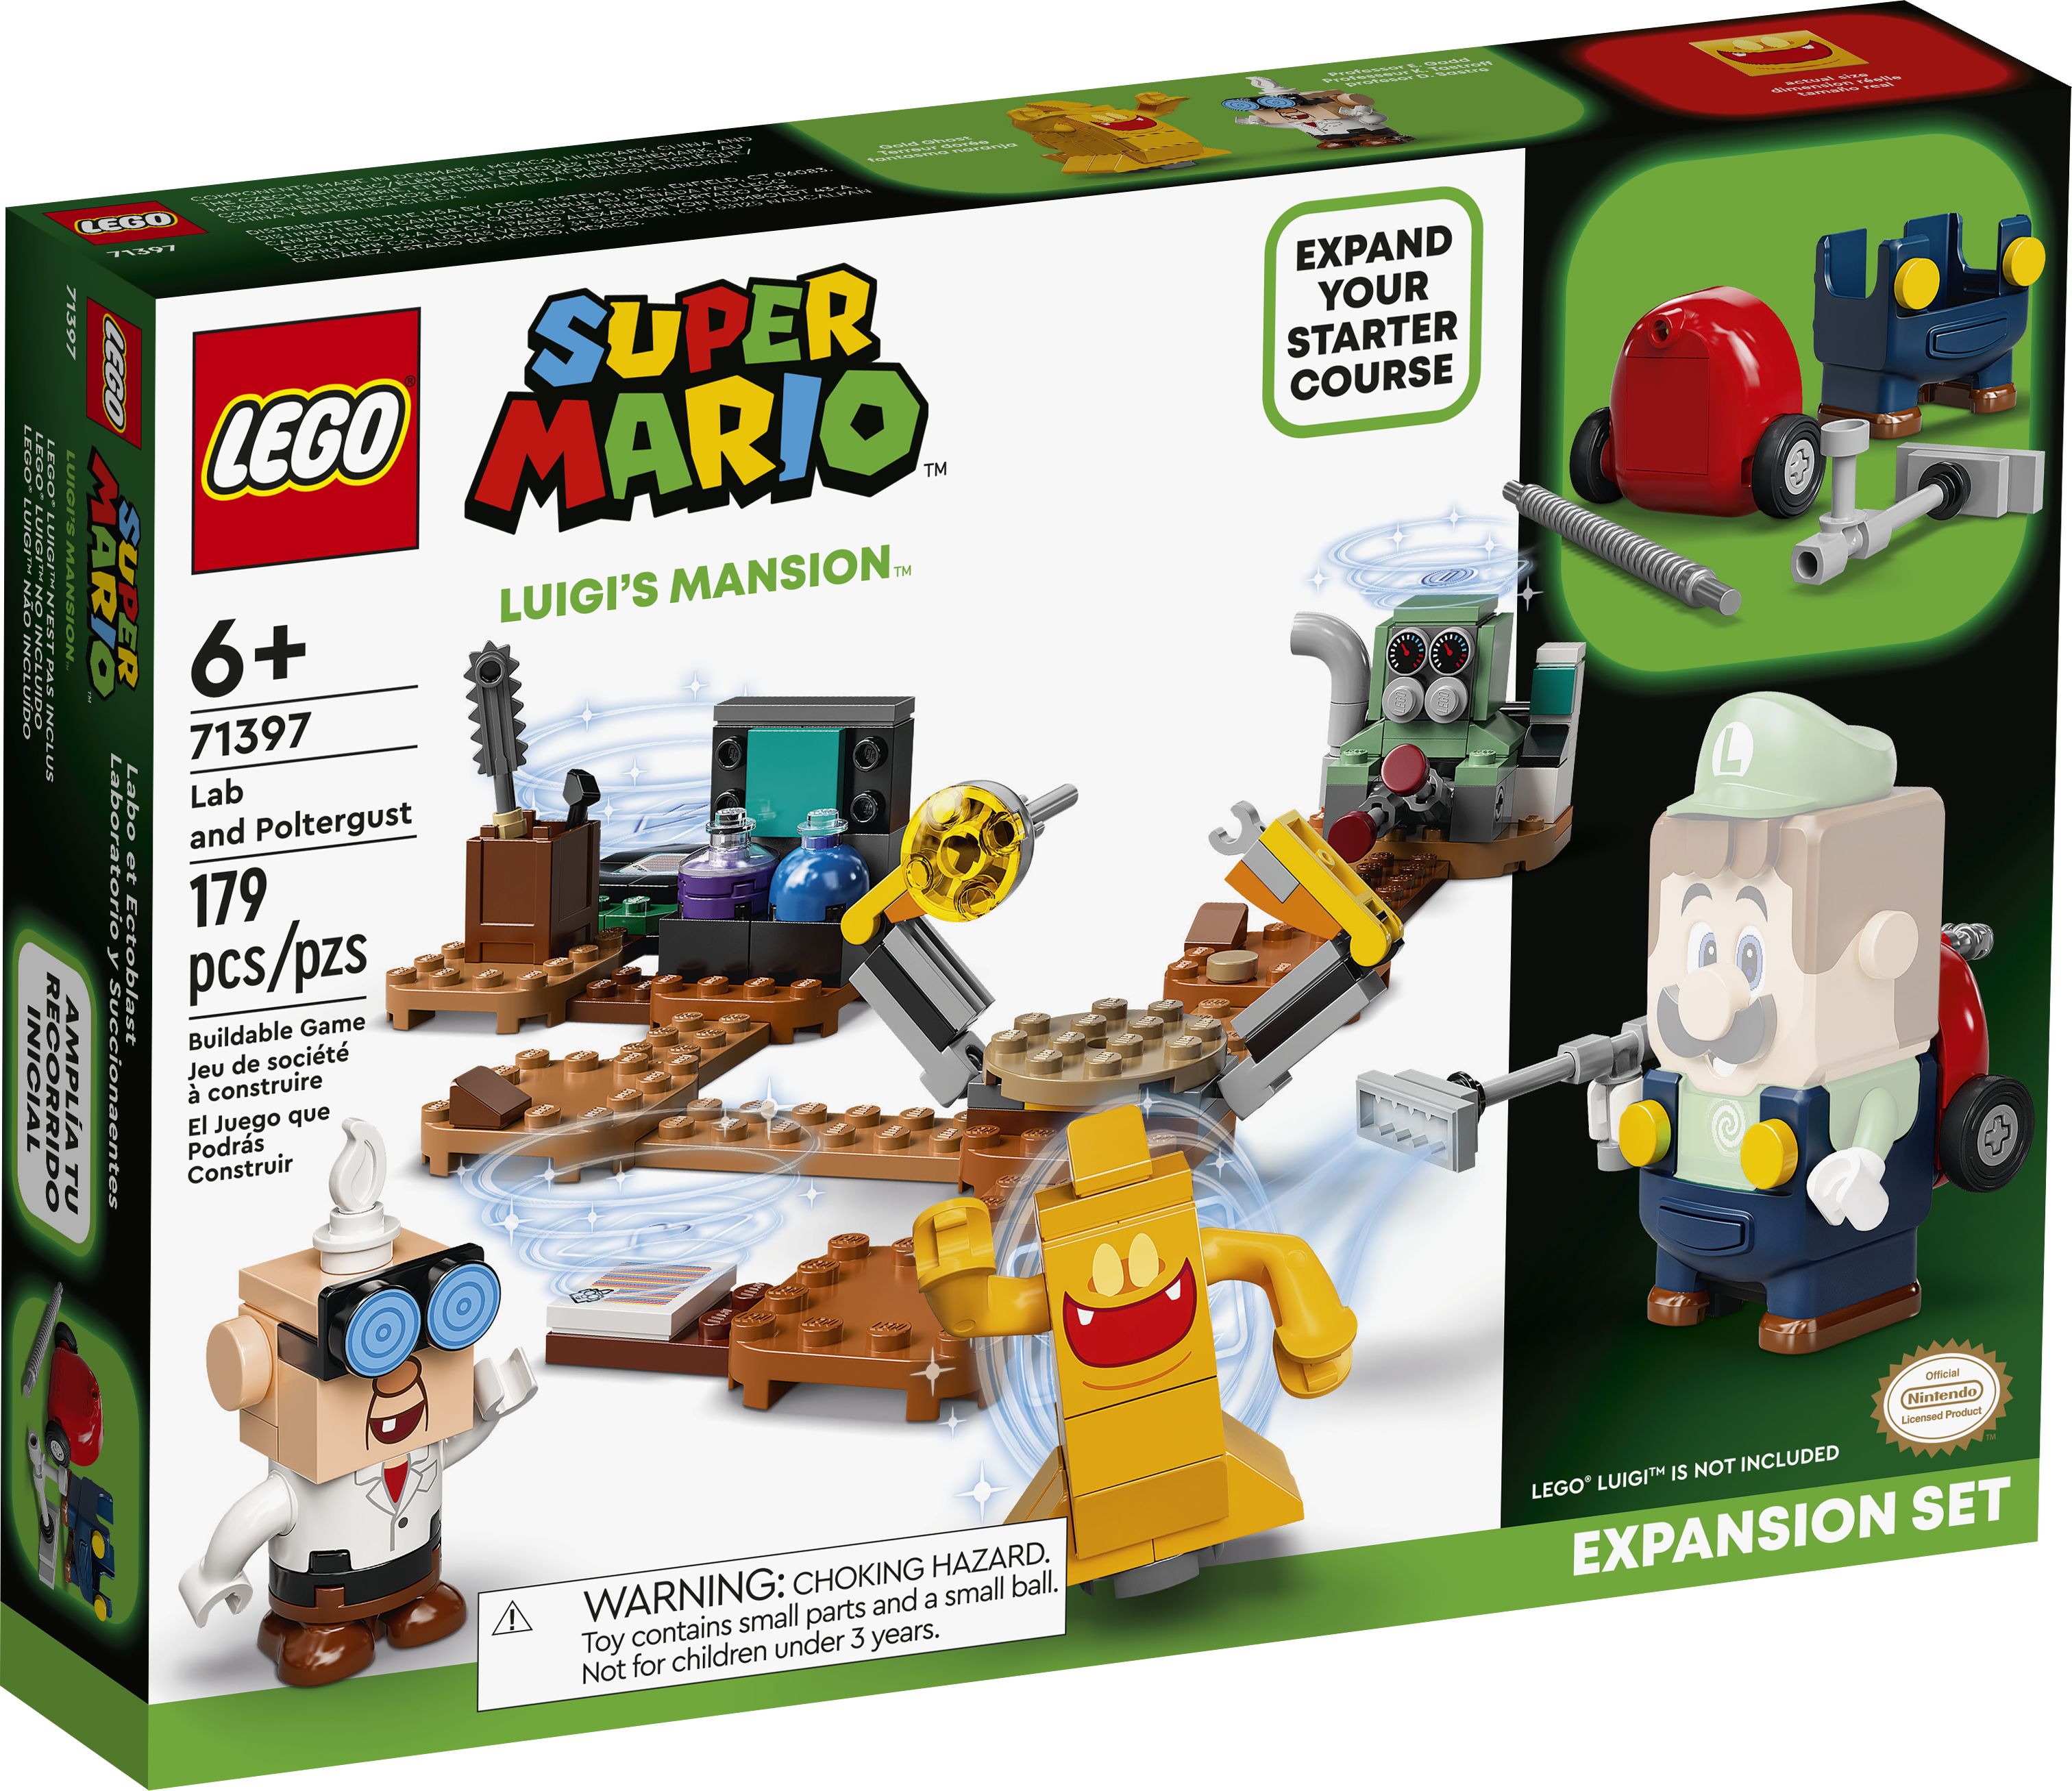 LEGO Super Mario 71397 Luigi’s Mansion™: Labor und Schreckweg – Erweiterungsset LEGO_71397_box1_v39.jpg